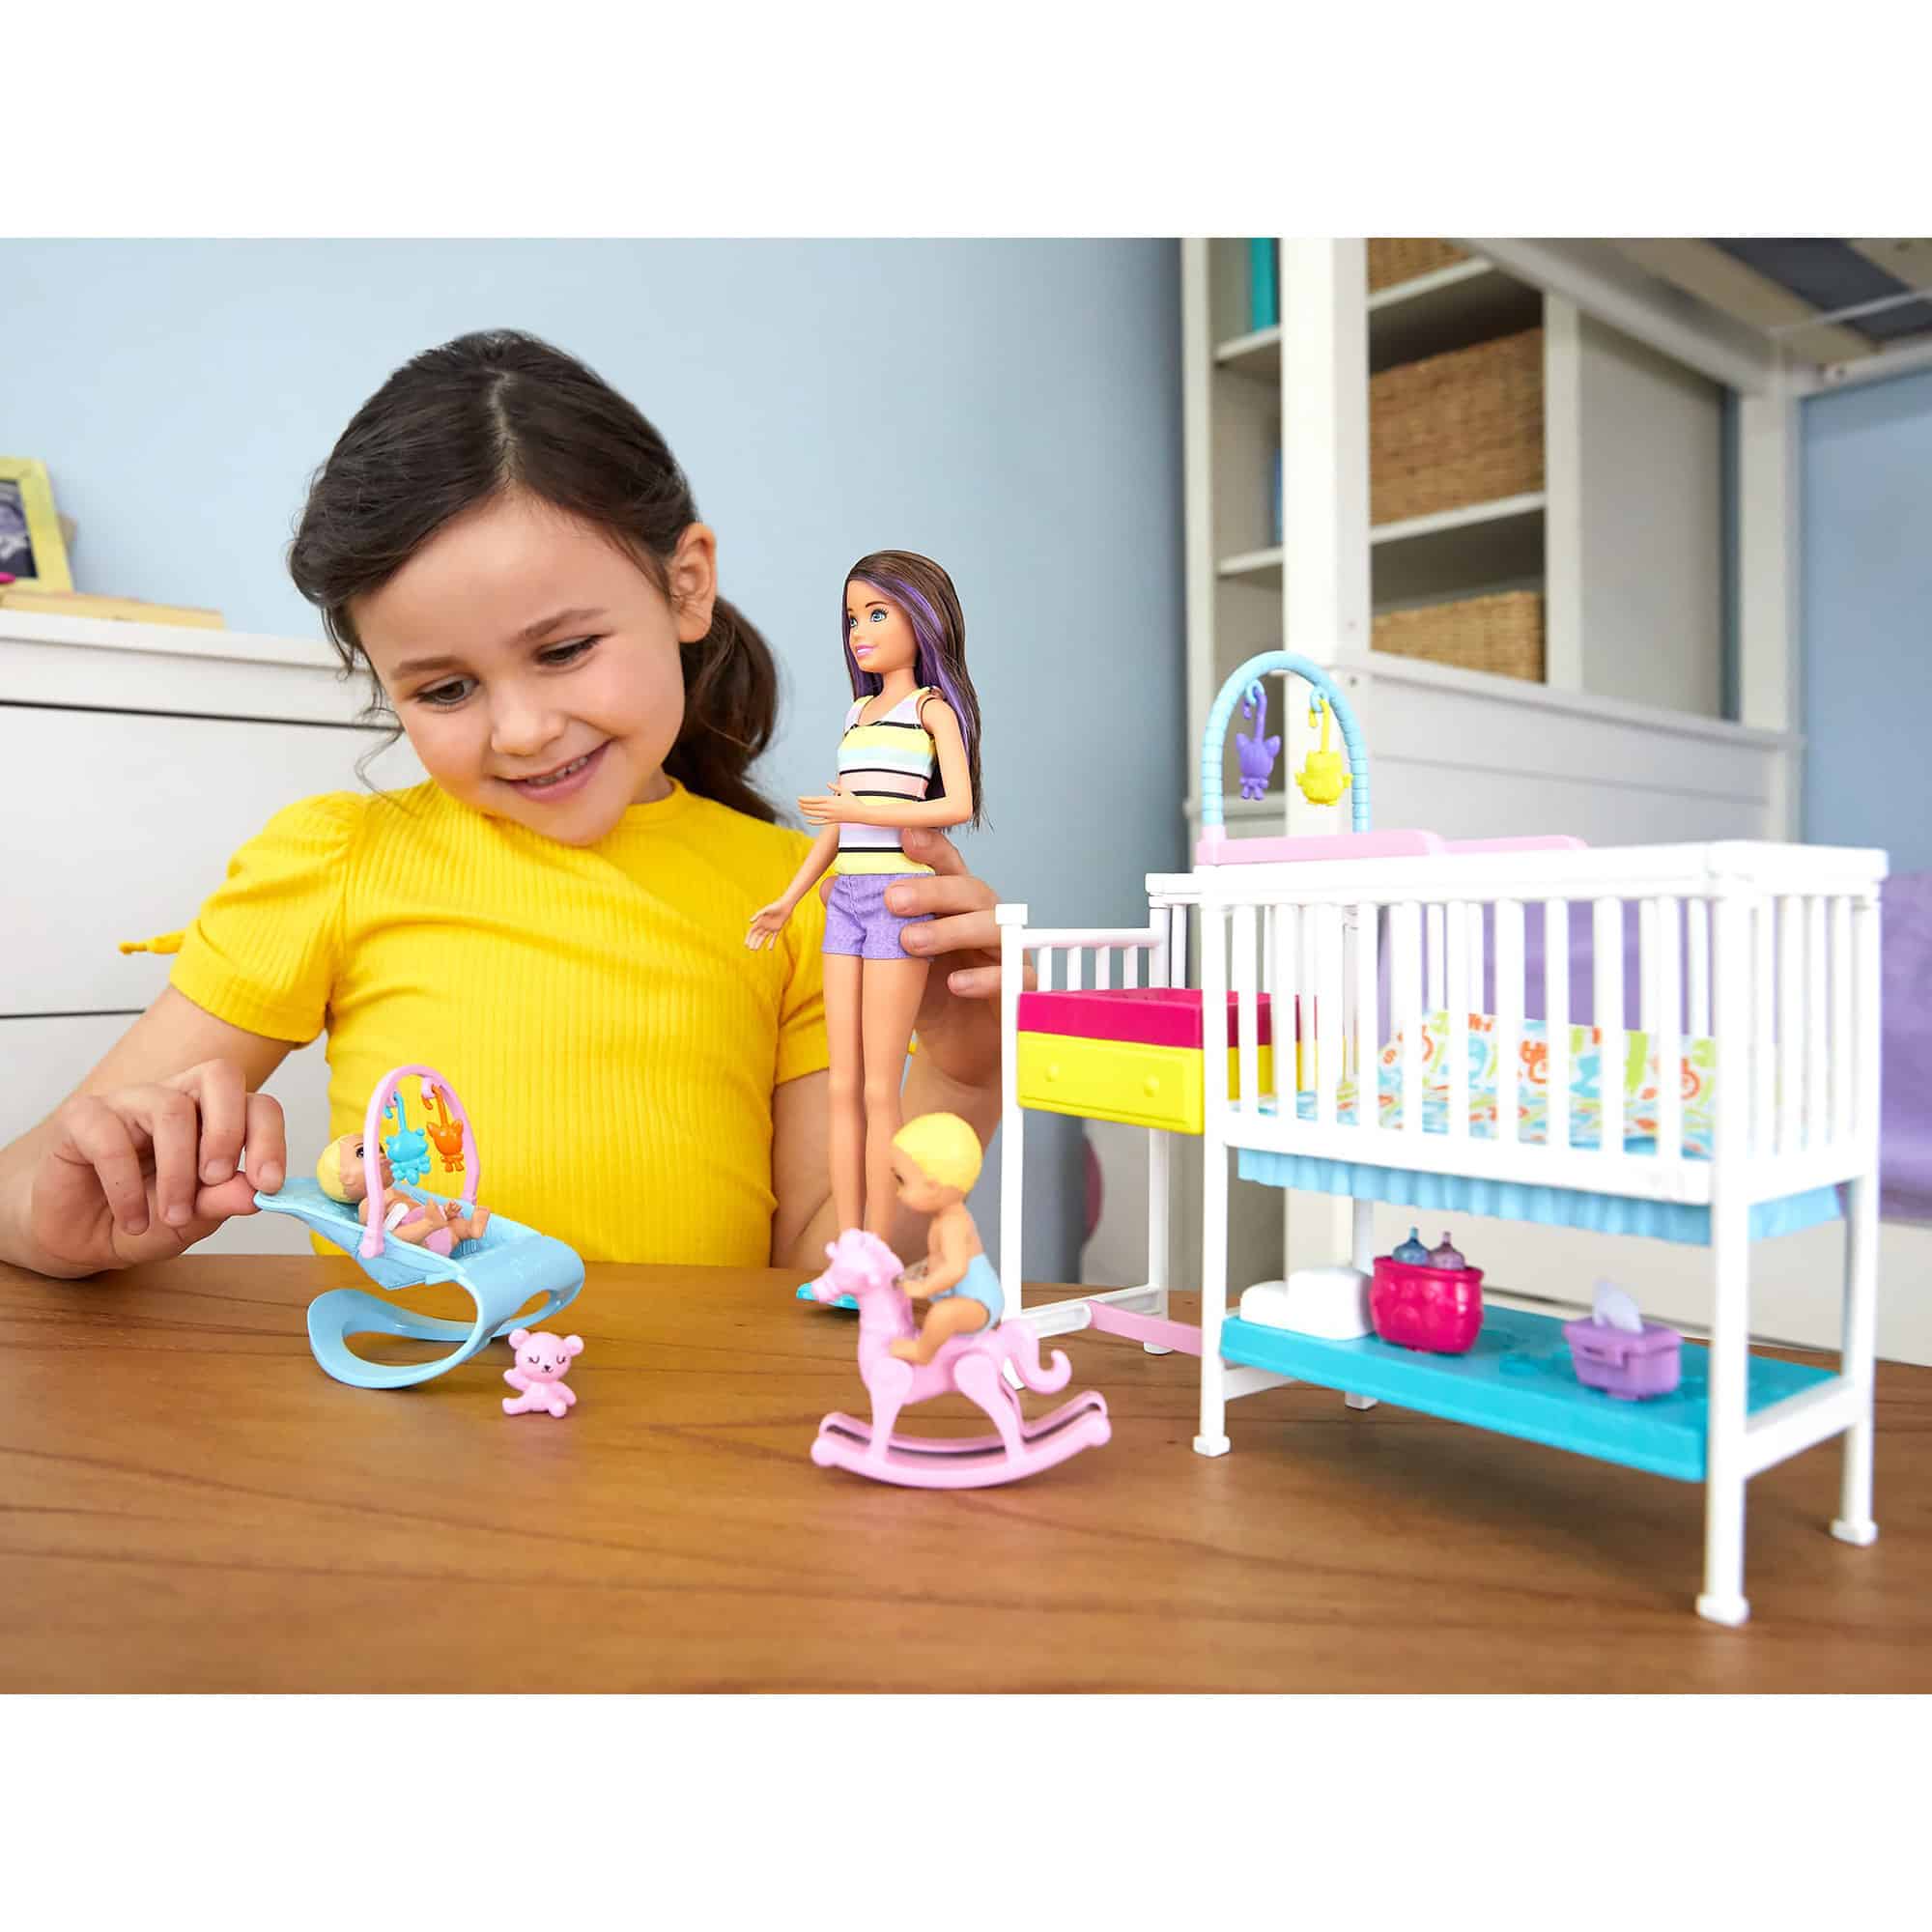 Barbie - Skipper Babysitters Inc - Nap & Nurture Nursery Dolls and Playset